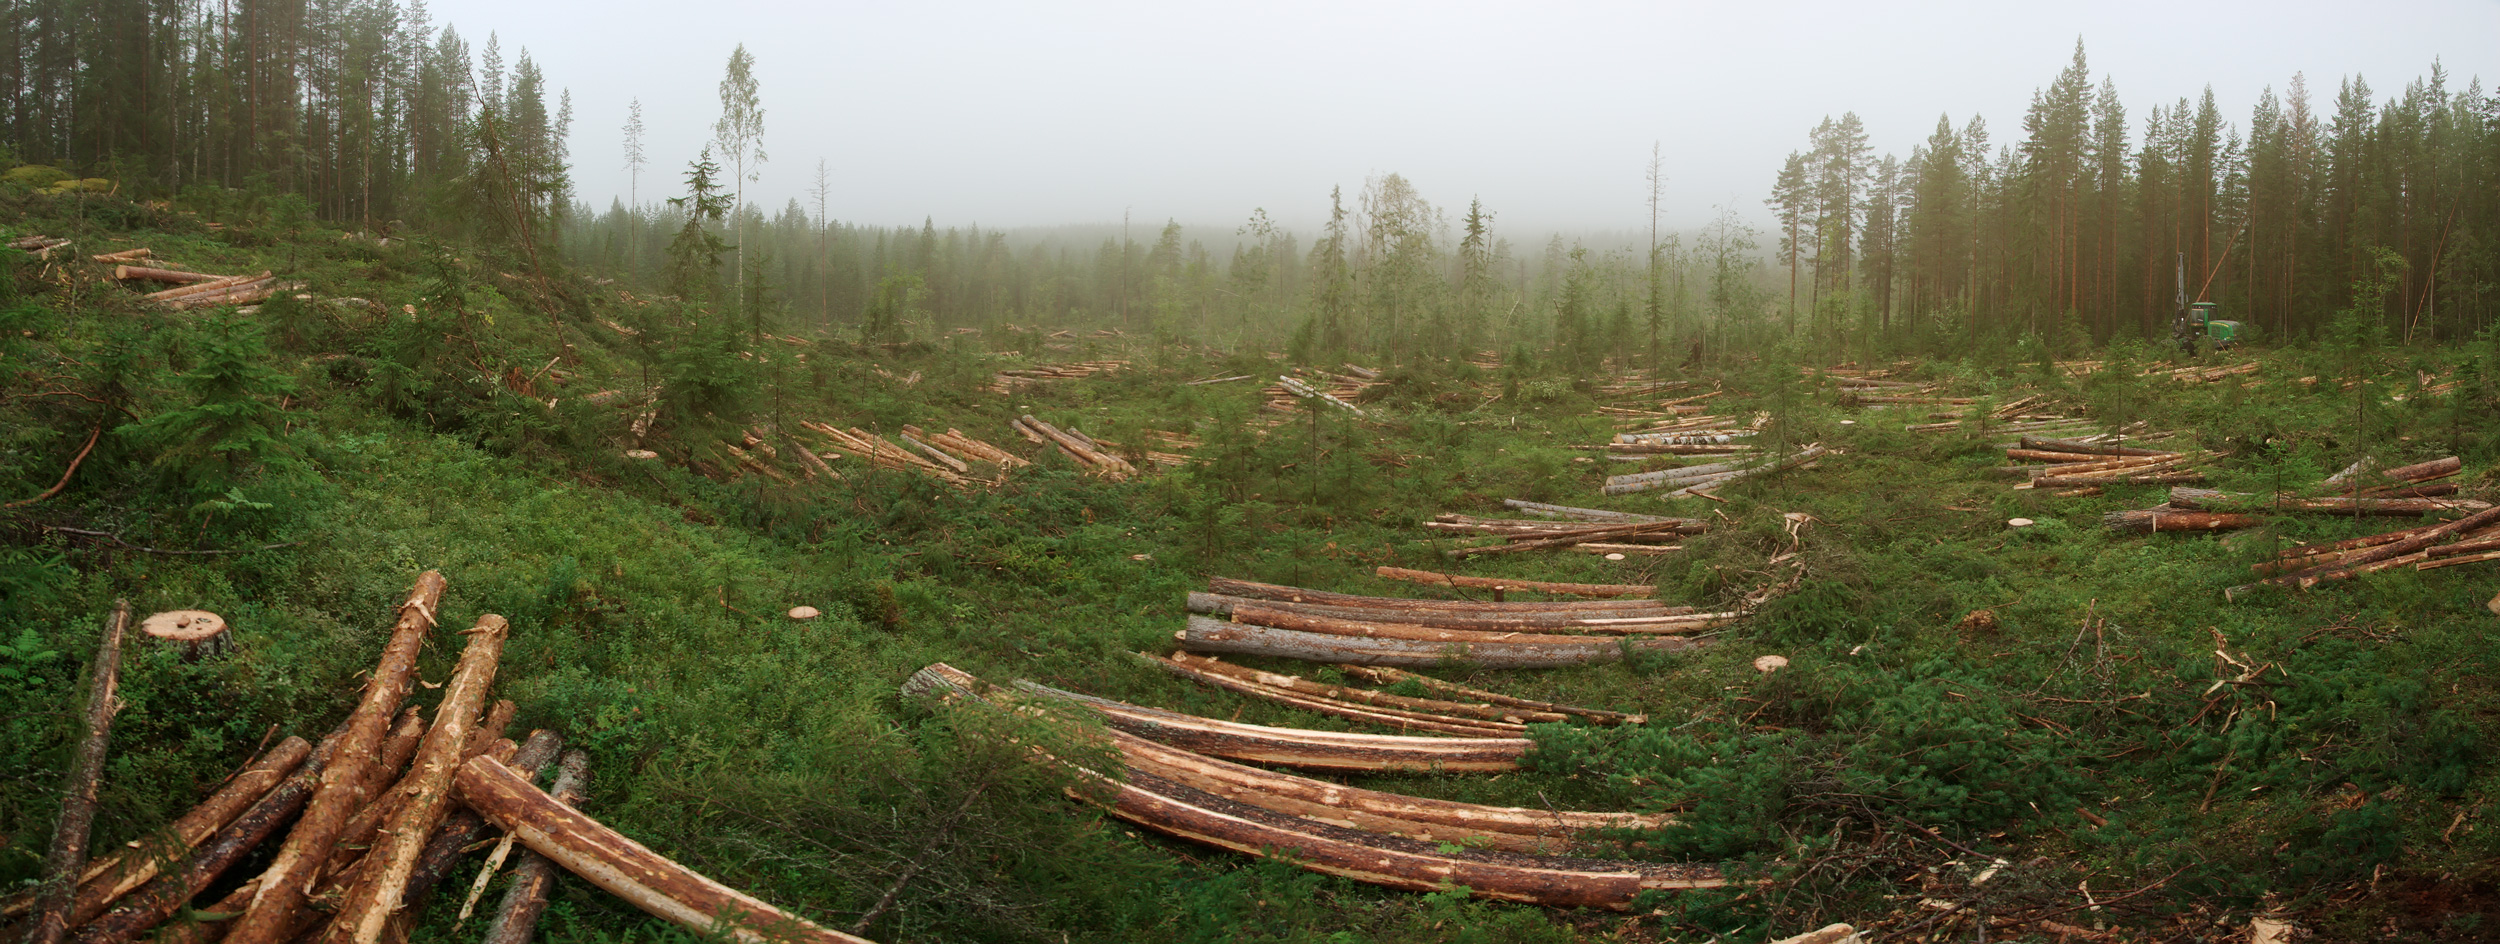 Panorama över skogsarbete med skördare